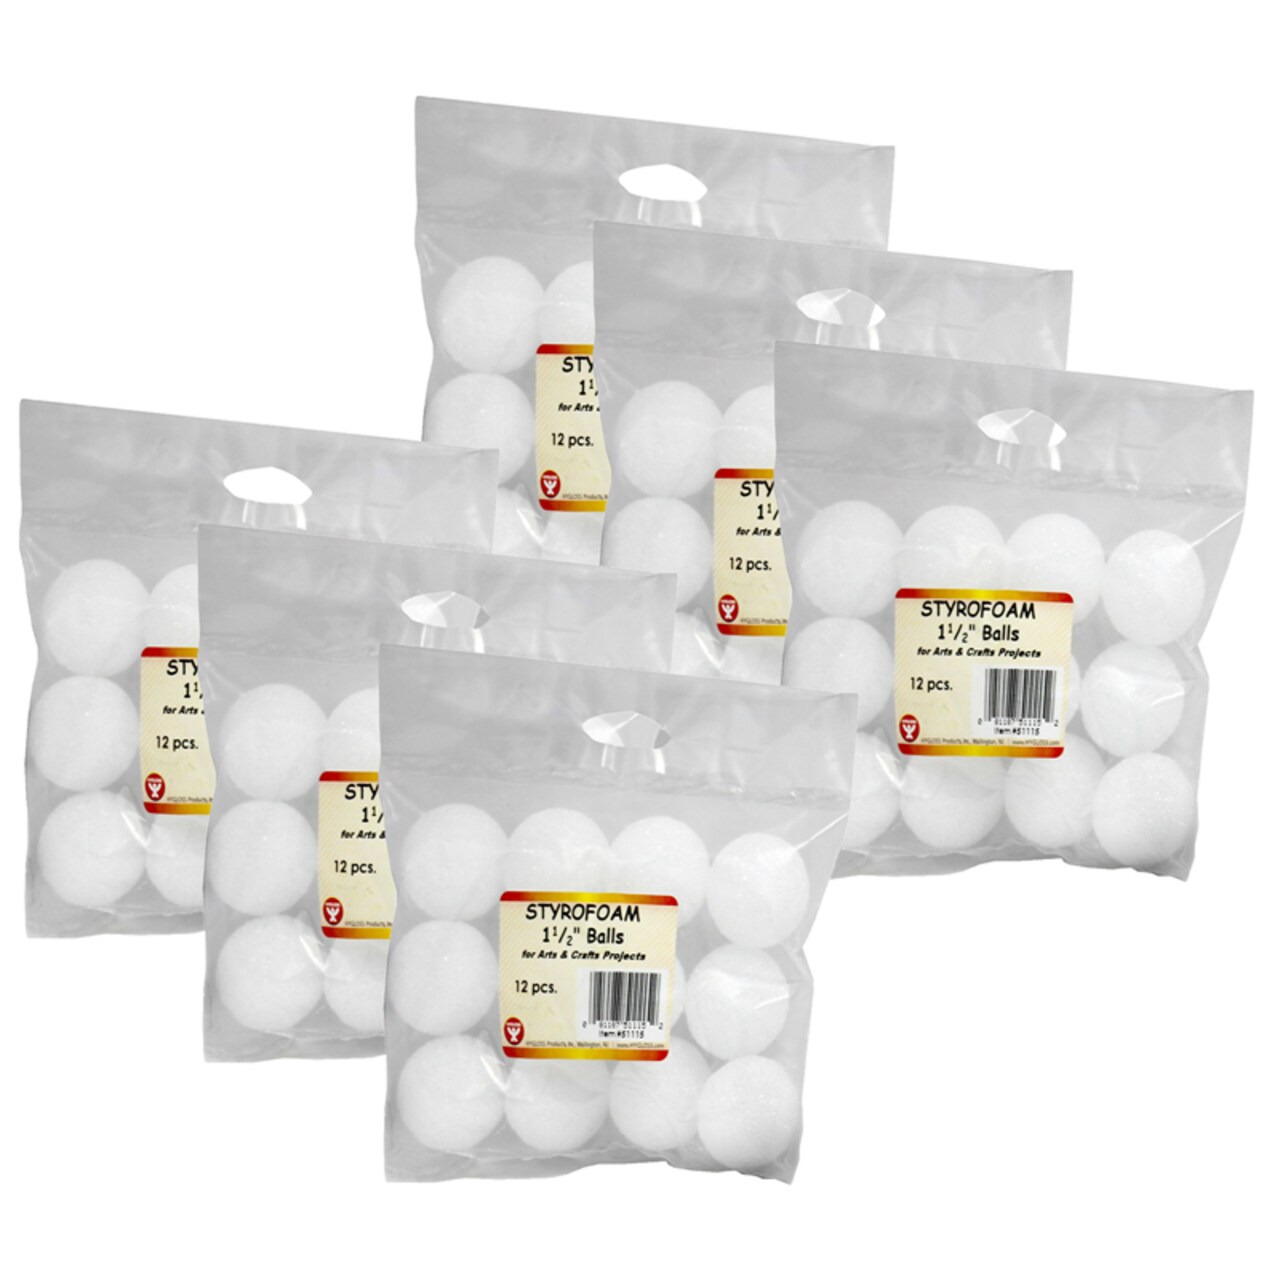 Craft Foam Balls, 1-1/2 Inch, White, 12 Per Pack, 6 Packs